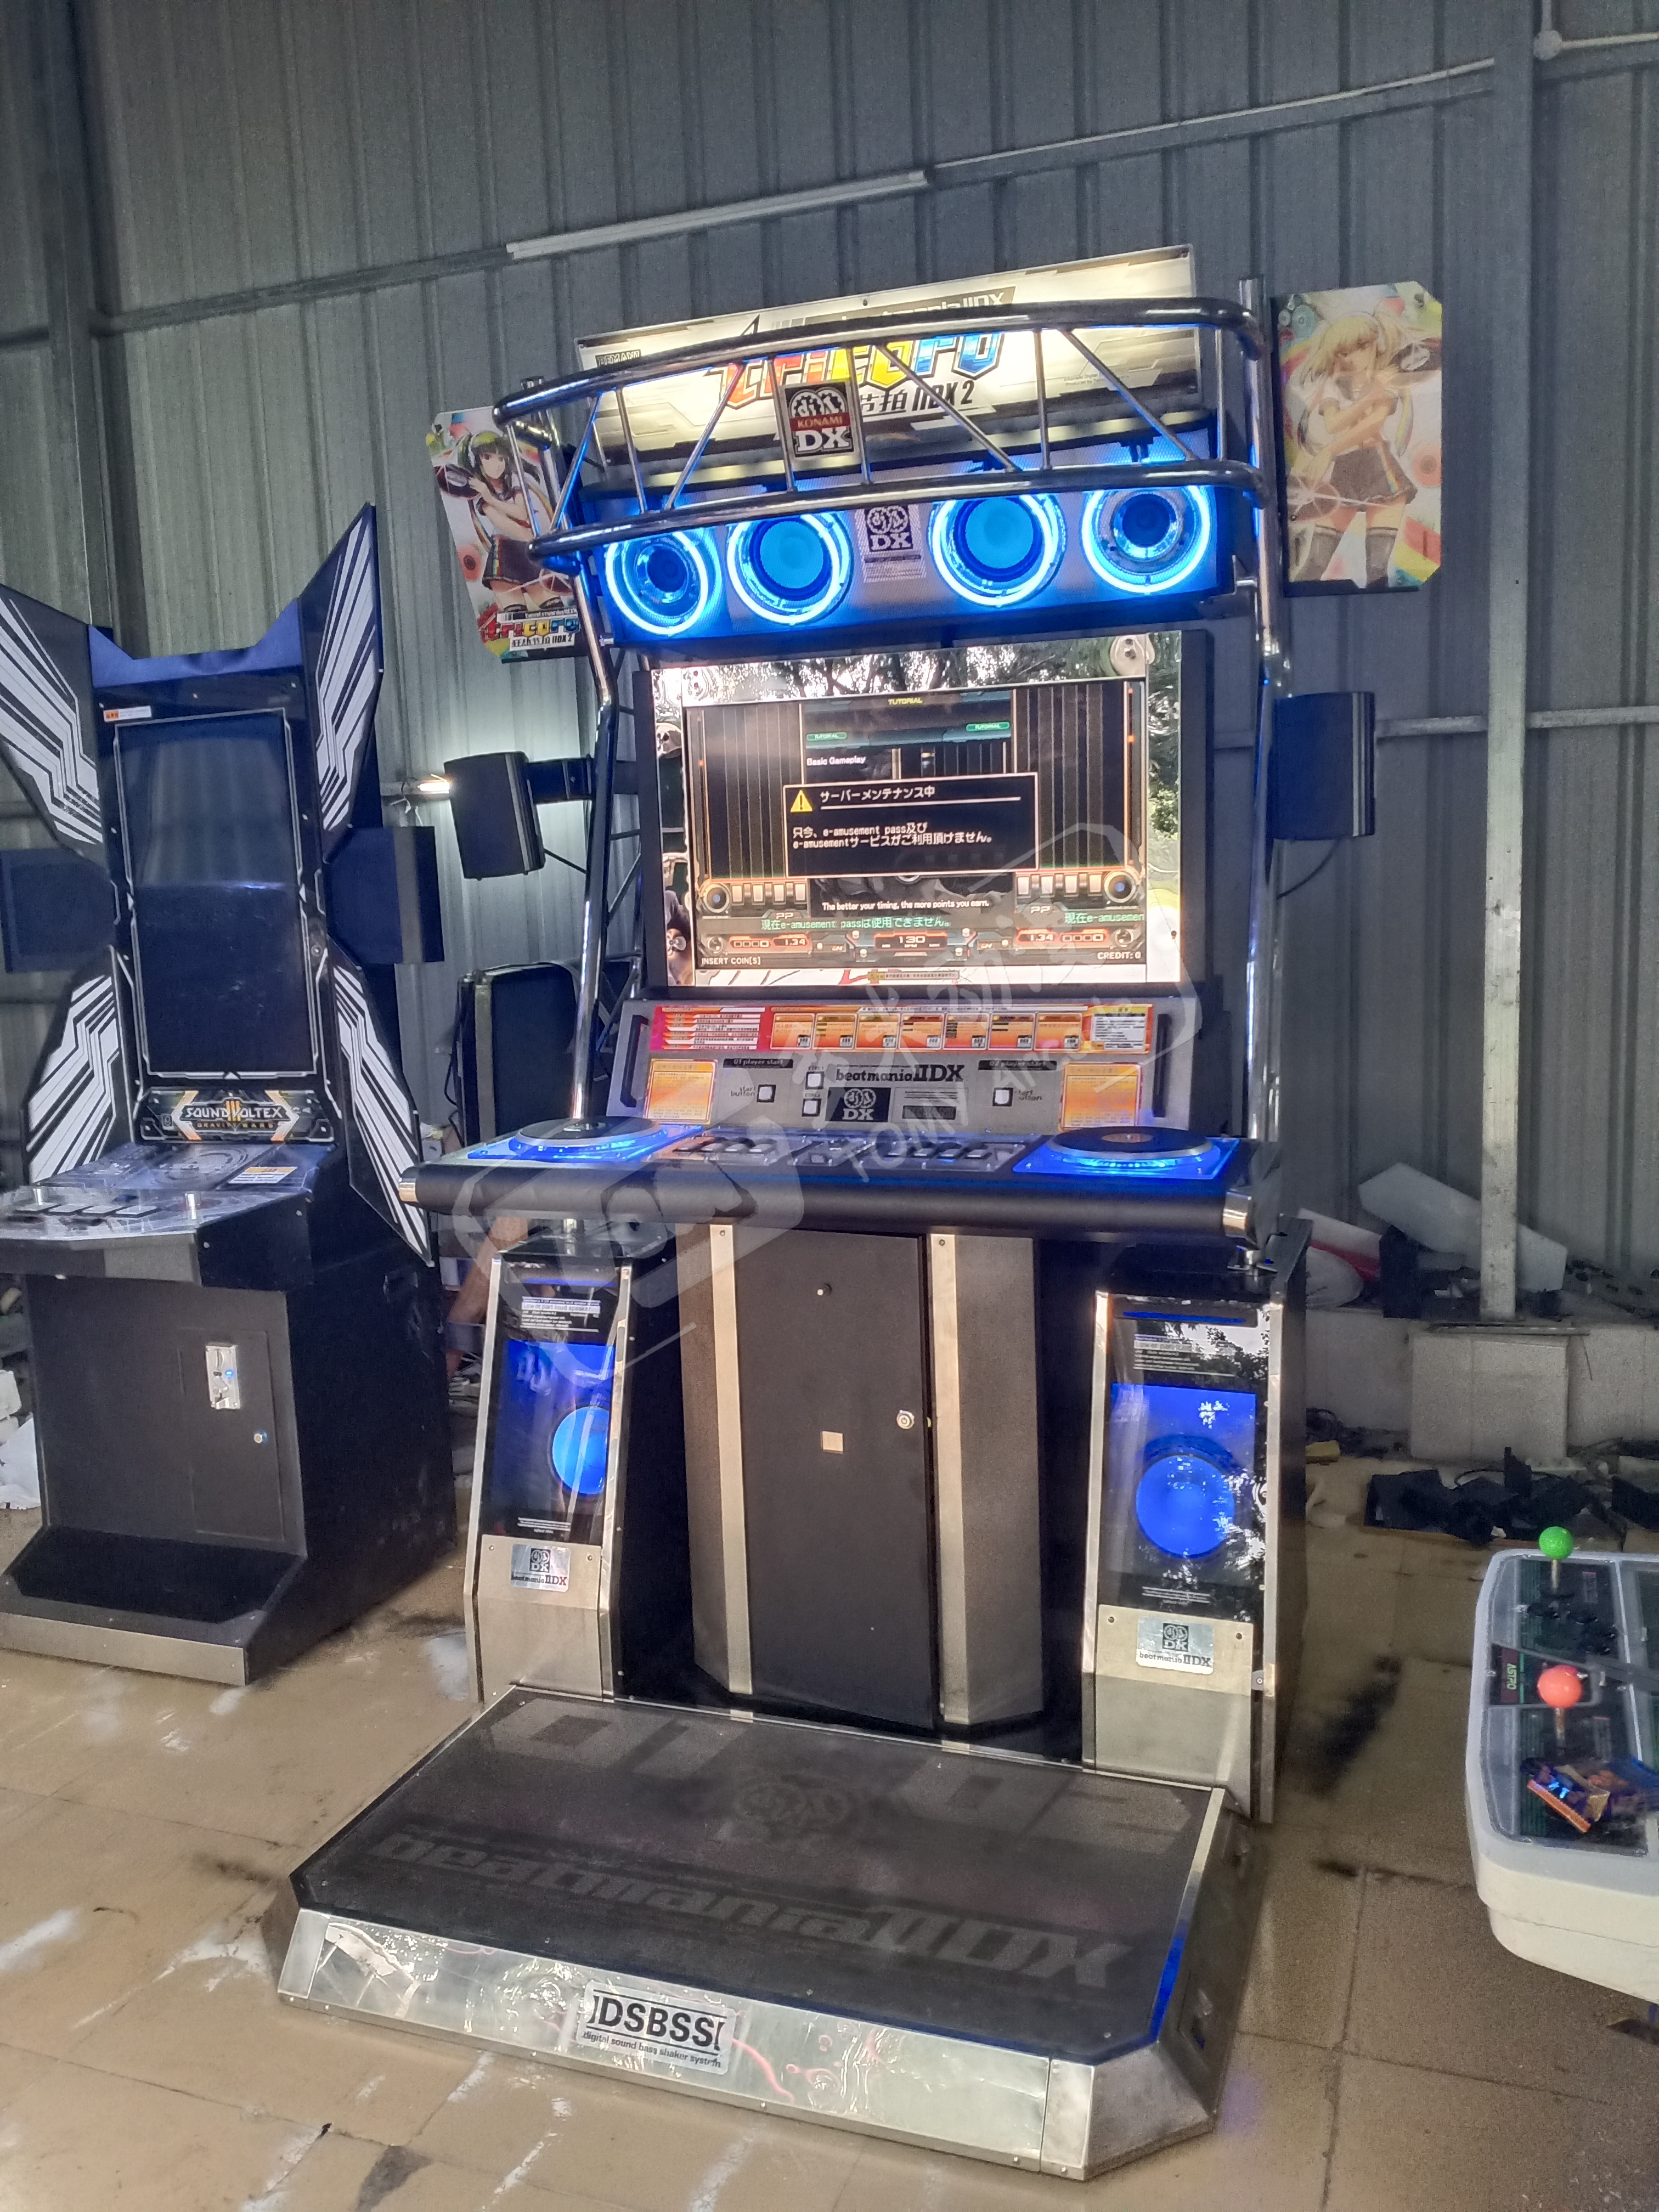 Beatmania II DX 29 Bemani rhythm game machine-tomy arcade